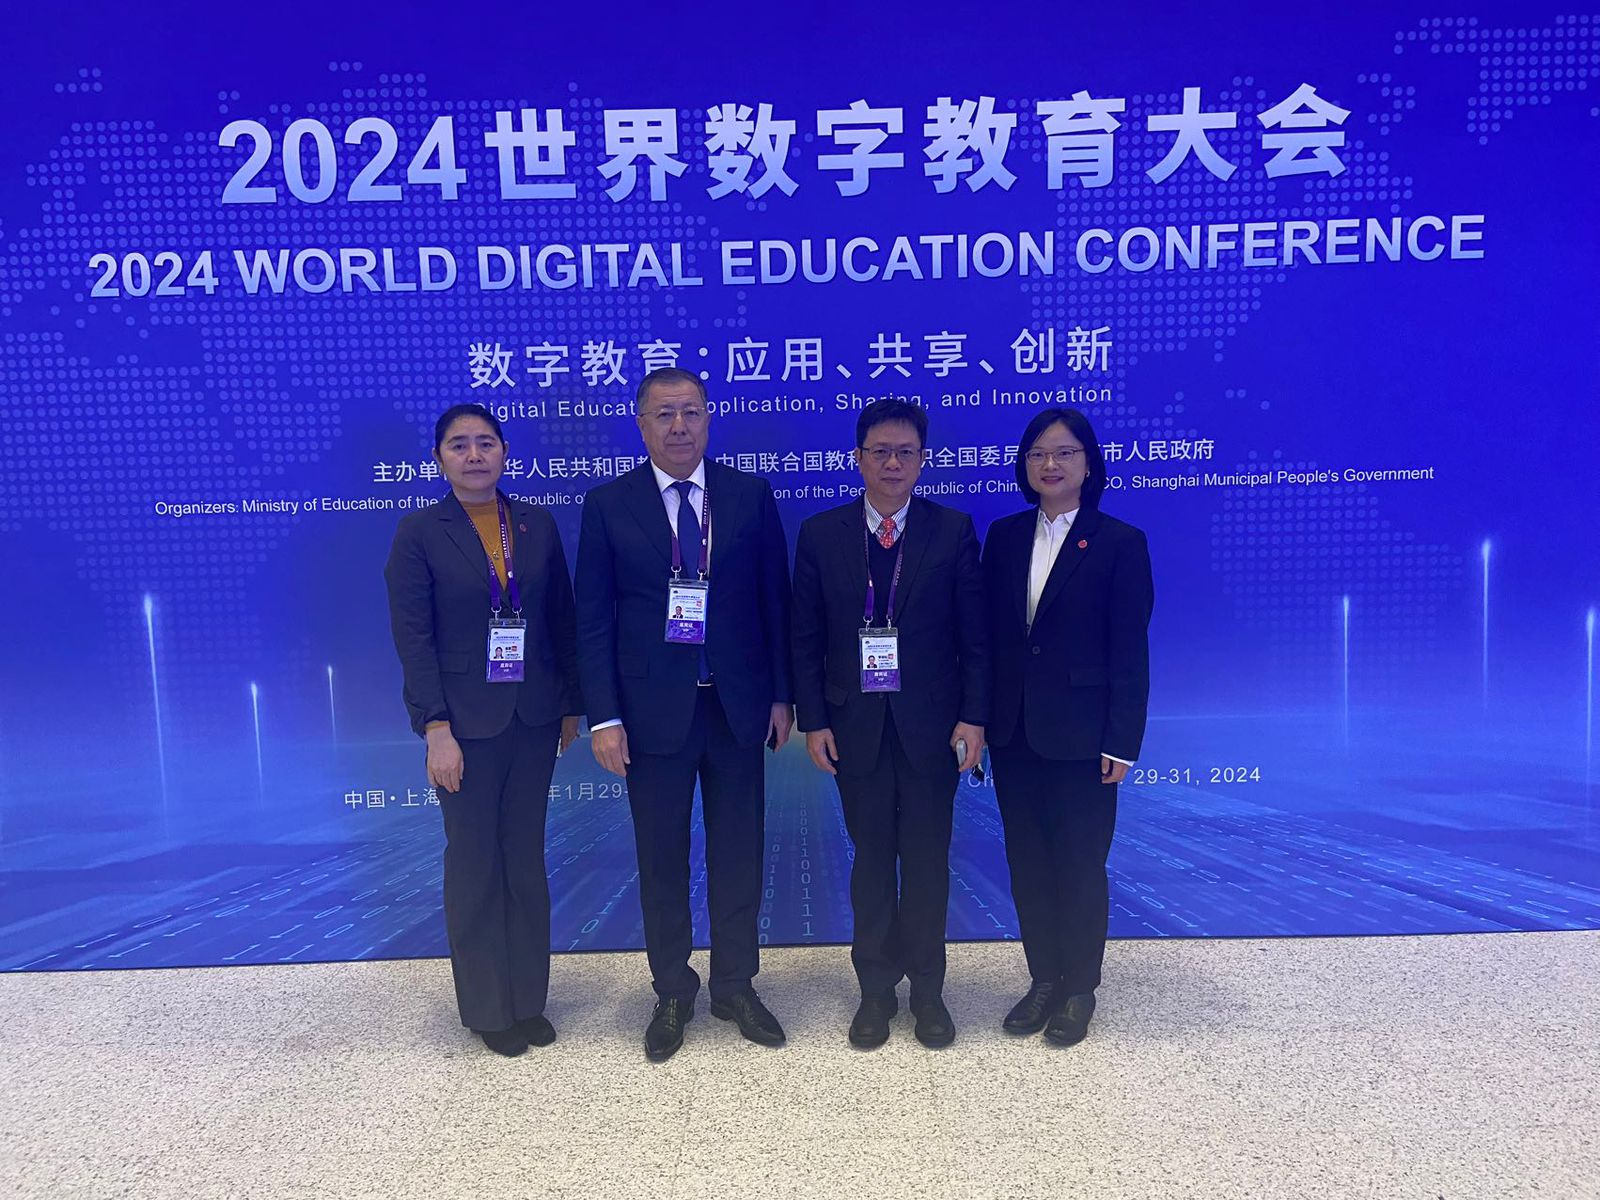 ҚазҰУ ректоры Шанхайда World Digital Education conference форумына қатысуда